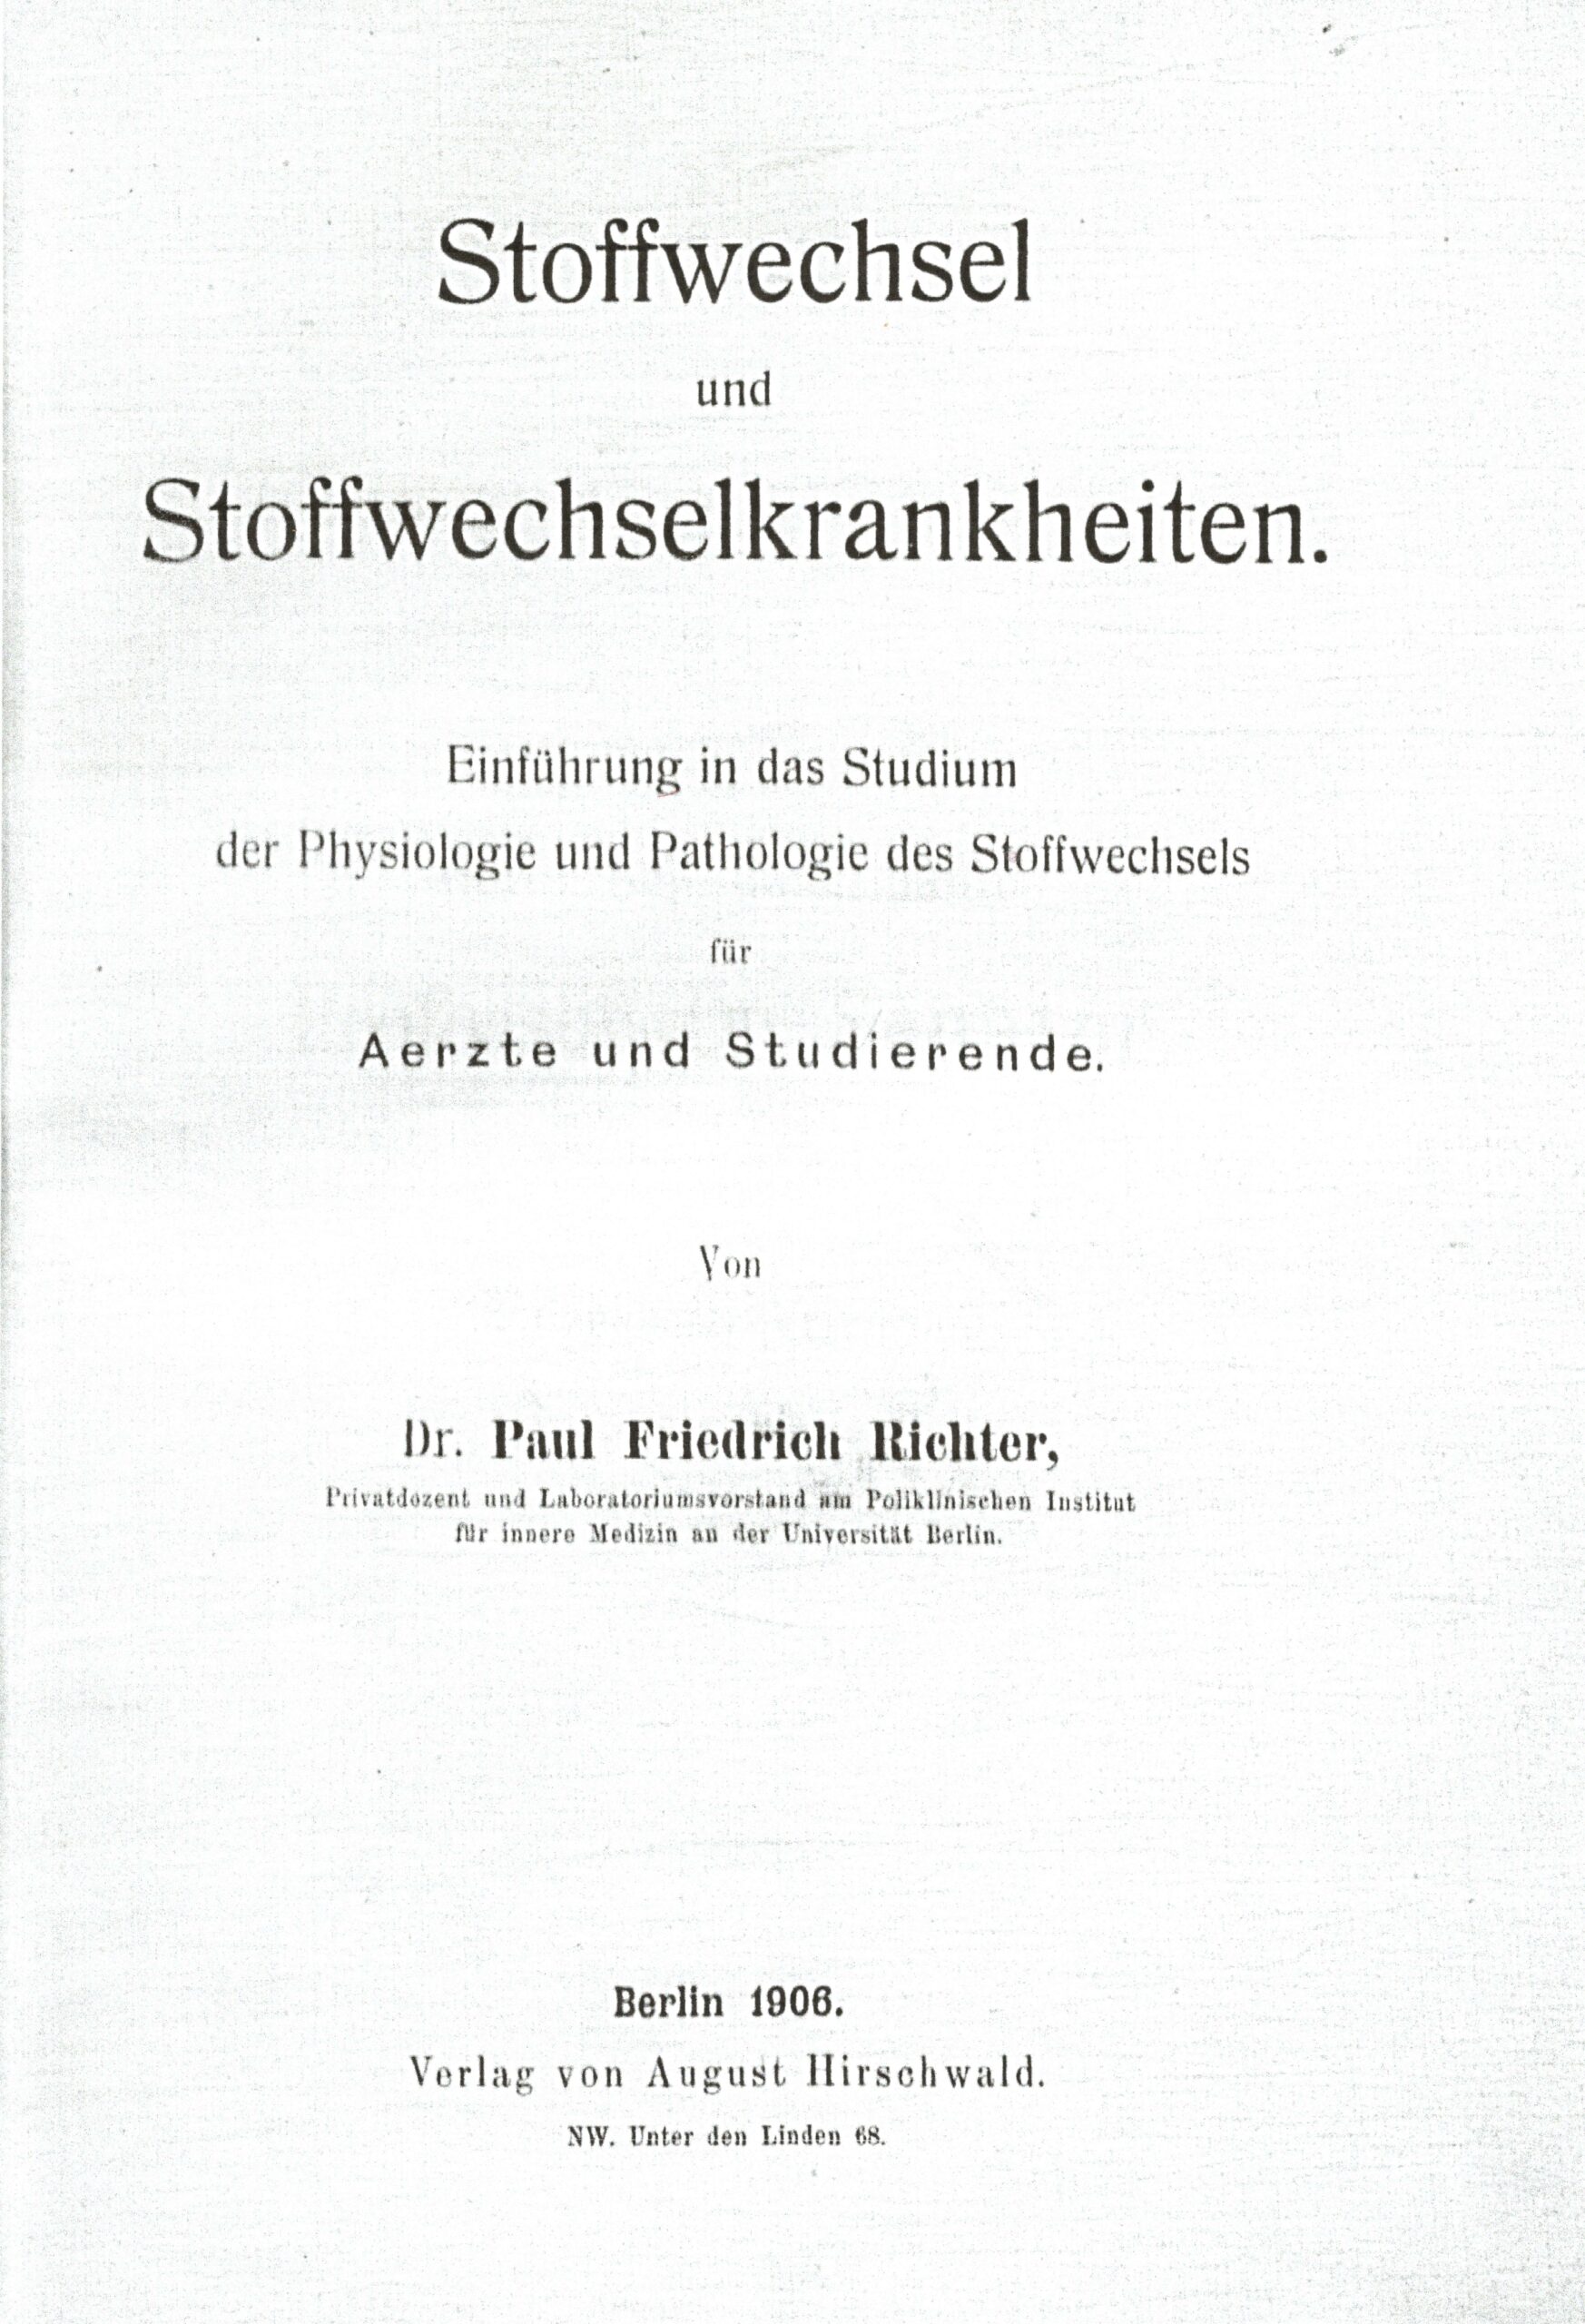 Publikation Paul Friedrich Richters 1906